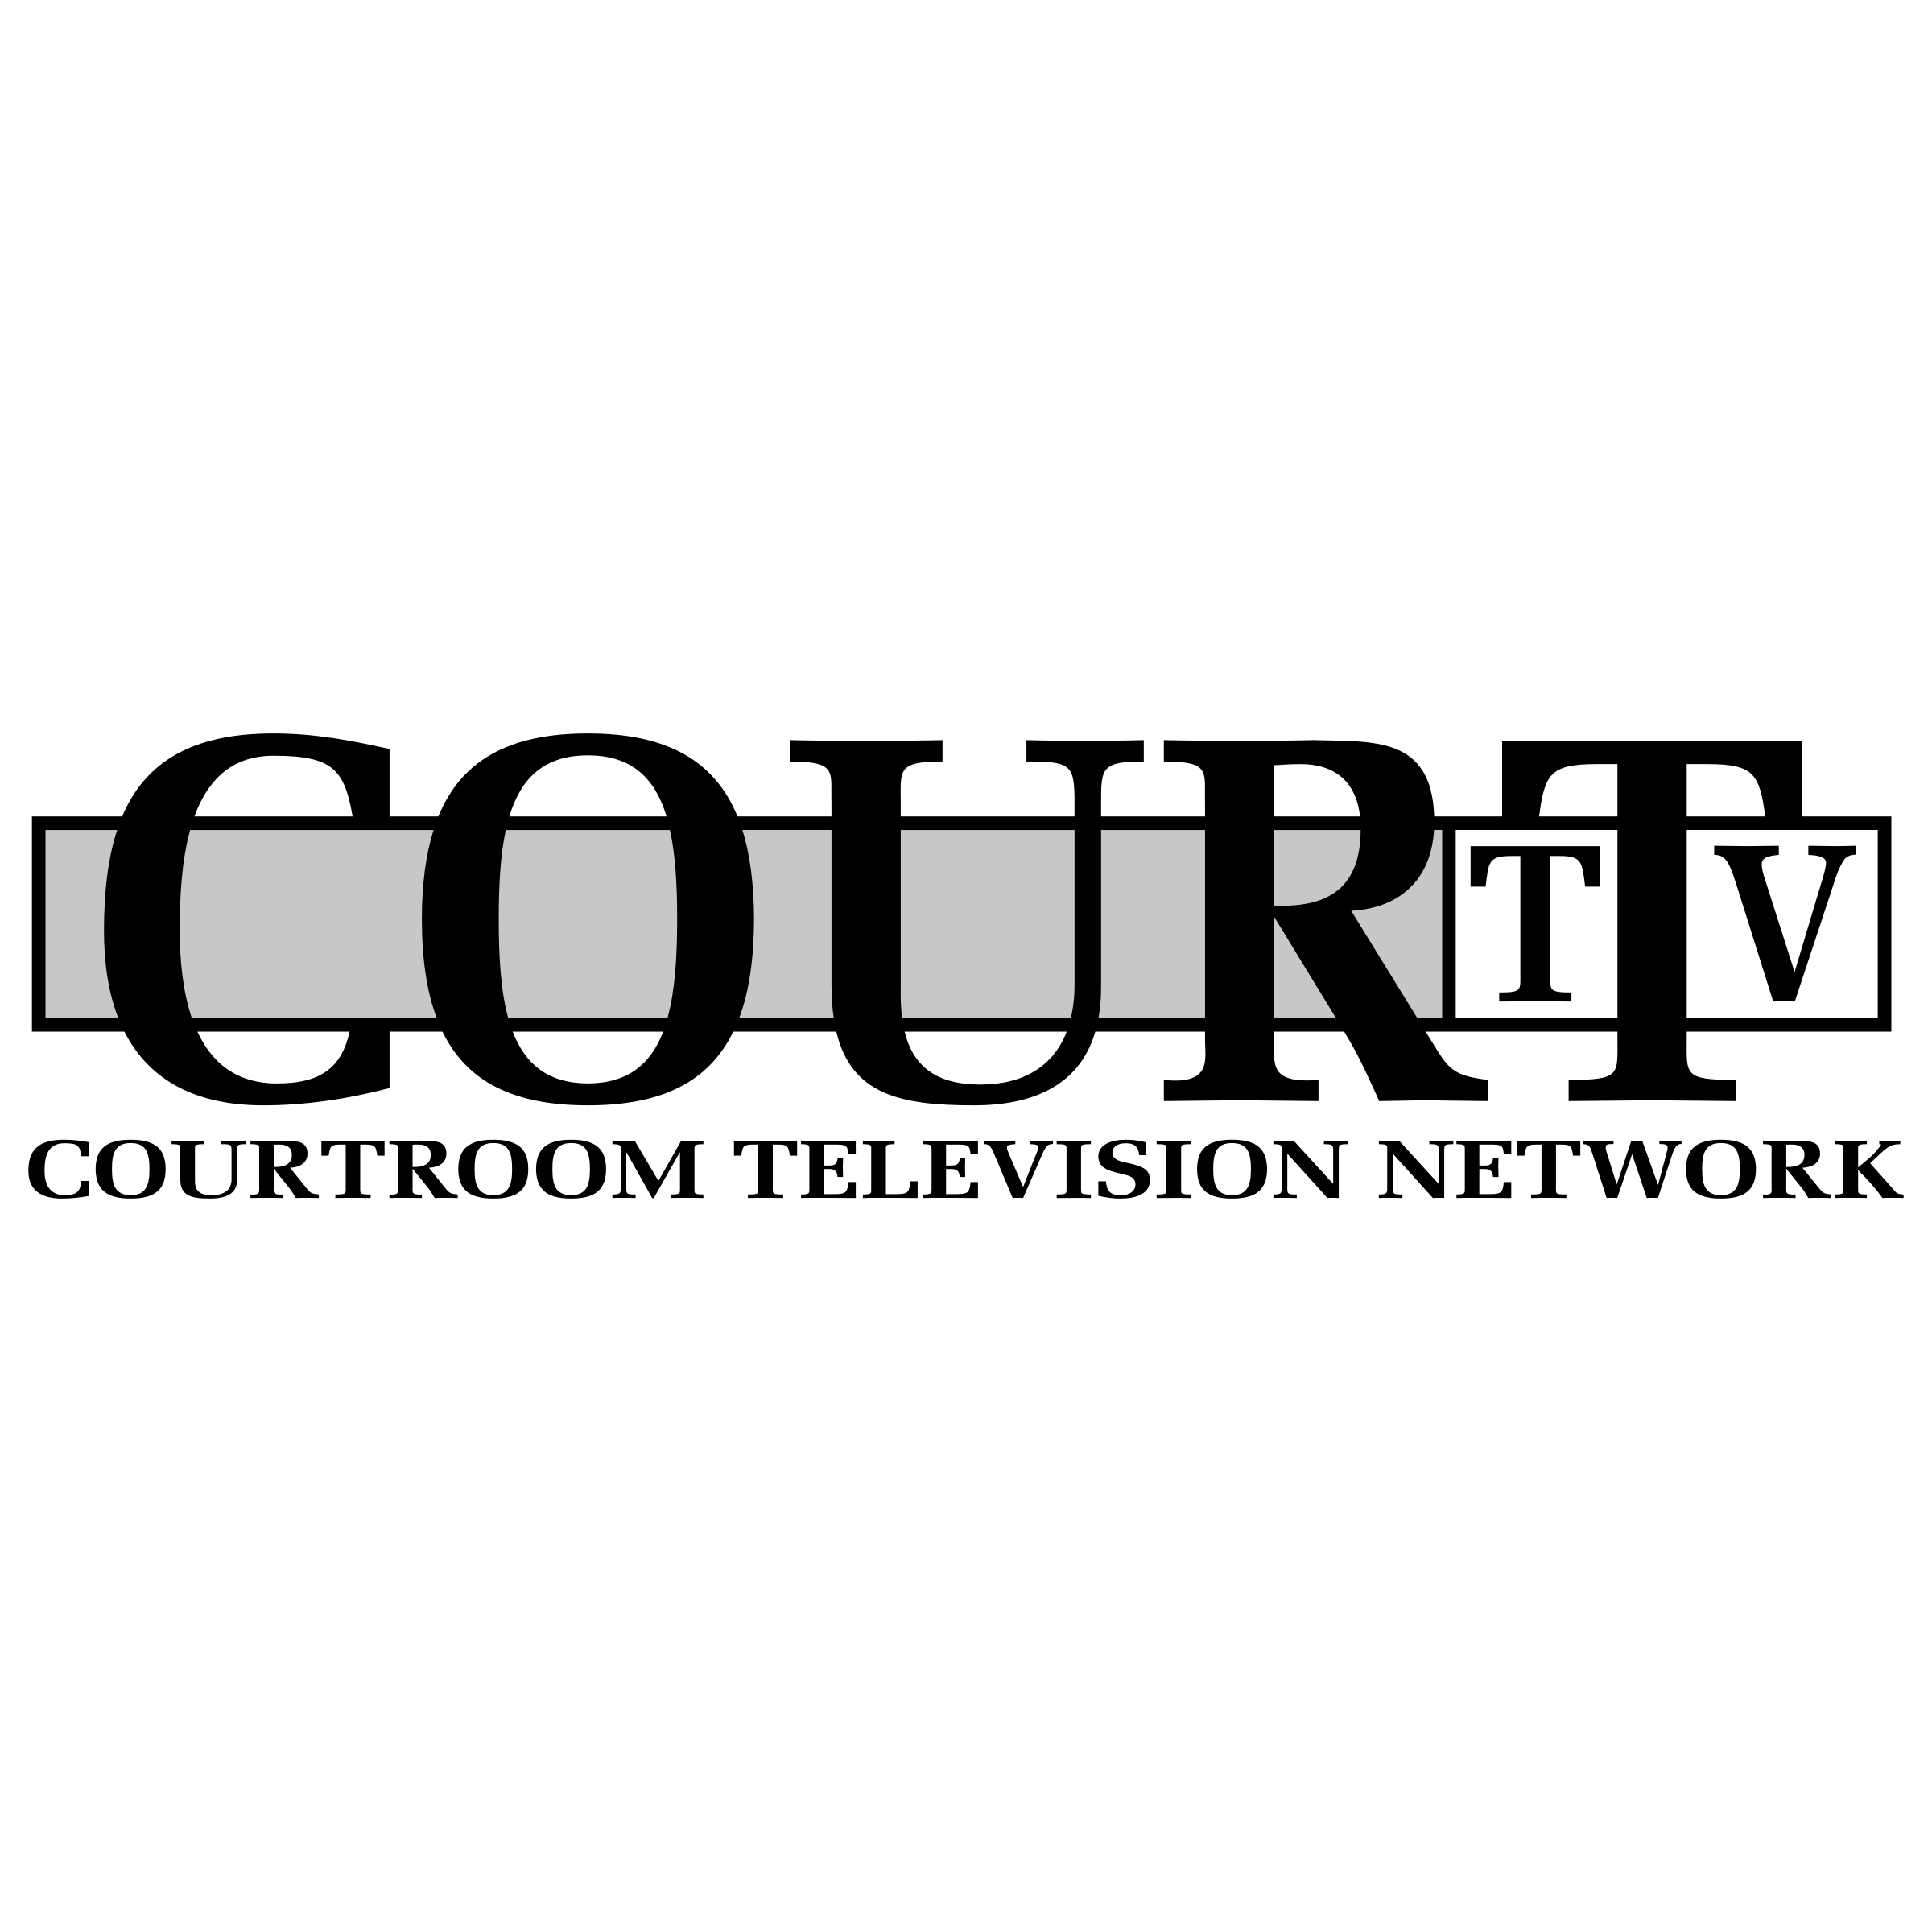 Courtroom Logo - Court TV Logo PNG Transparent & SVG Vector - Freebie Supply